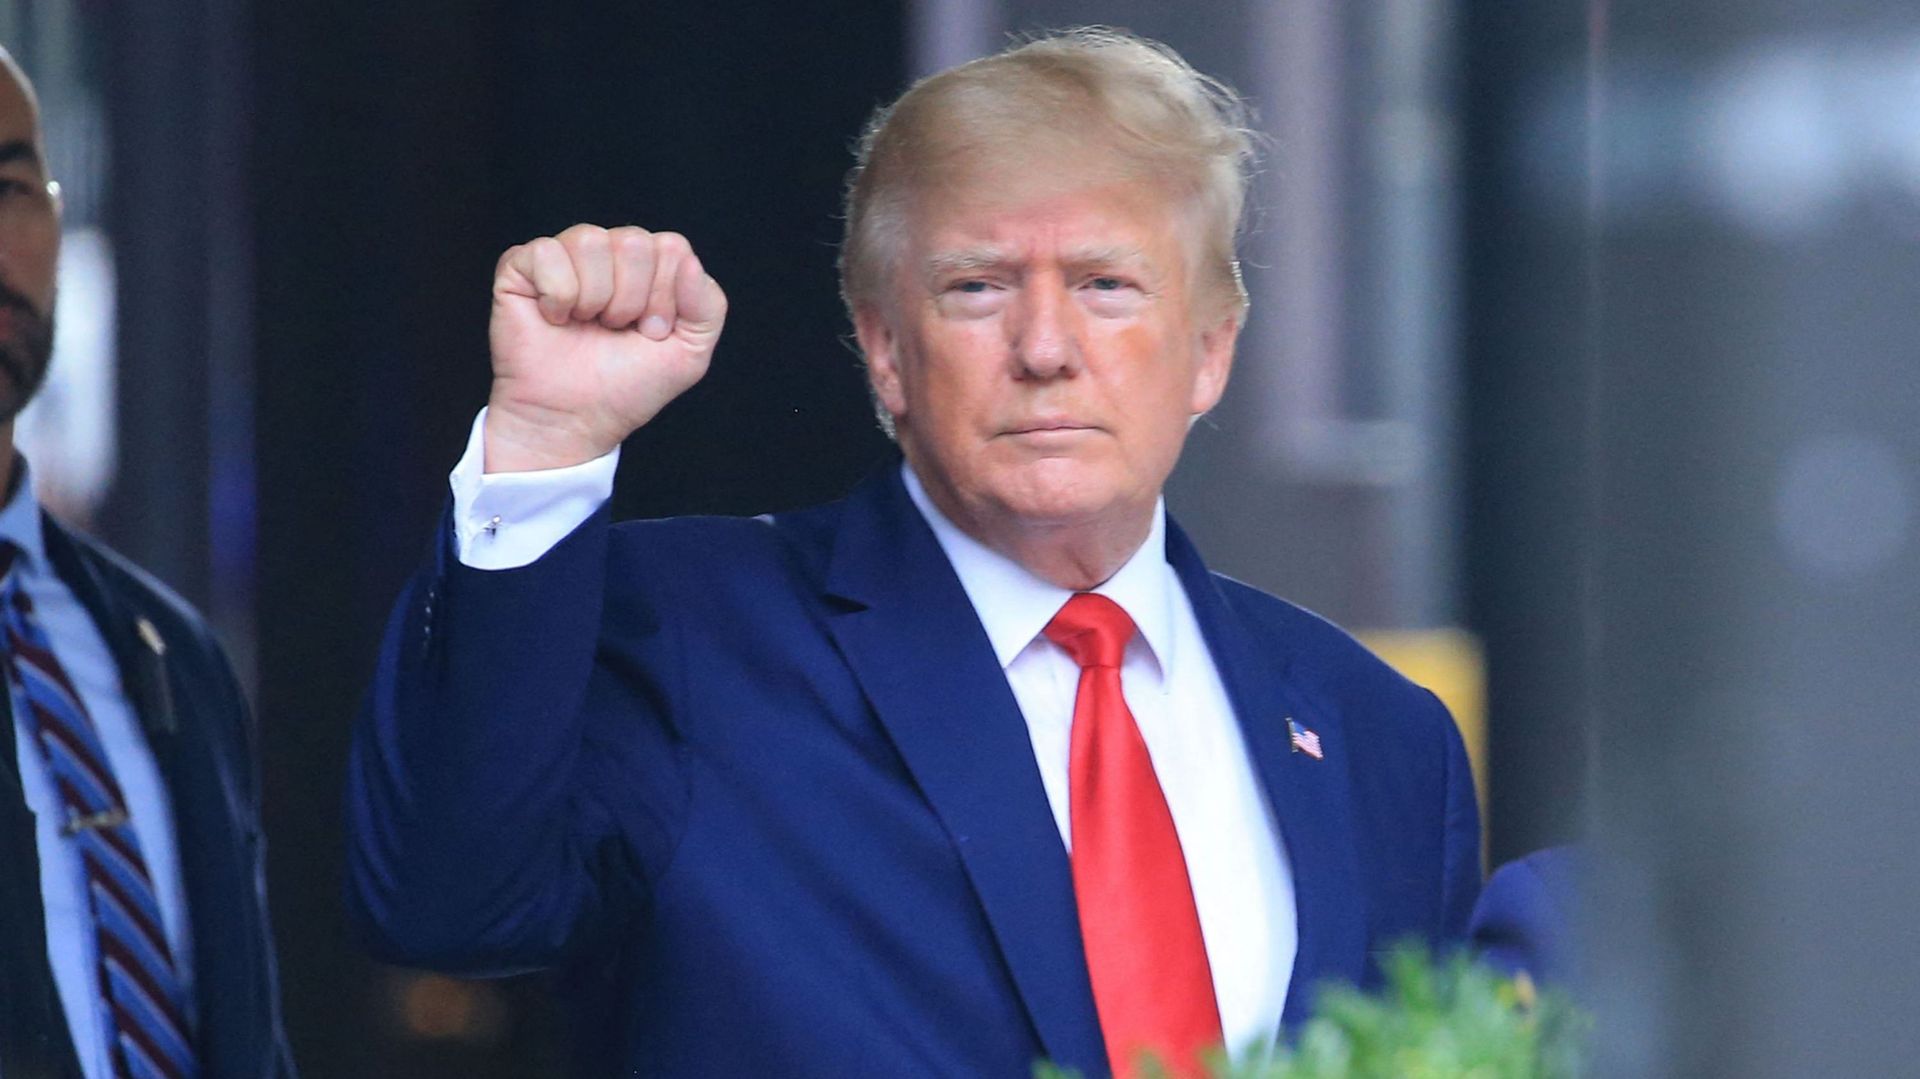 L'ancien président américain Donald Trump lève le poing en se dirigeant vers un véhicule à l'extérieur de la Trump Tower à New York, le 10 août 2022. 